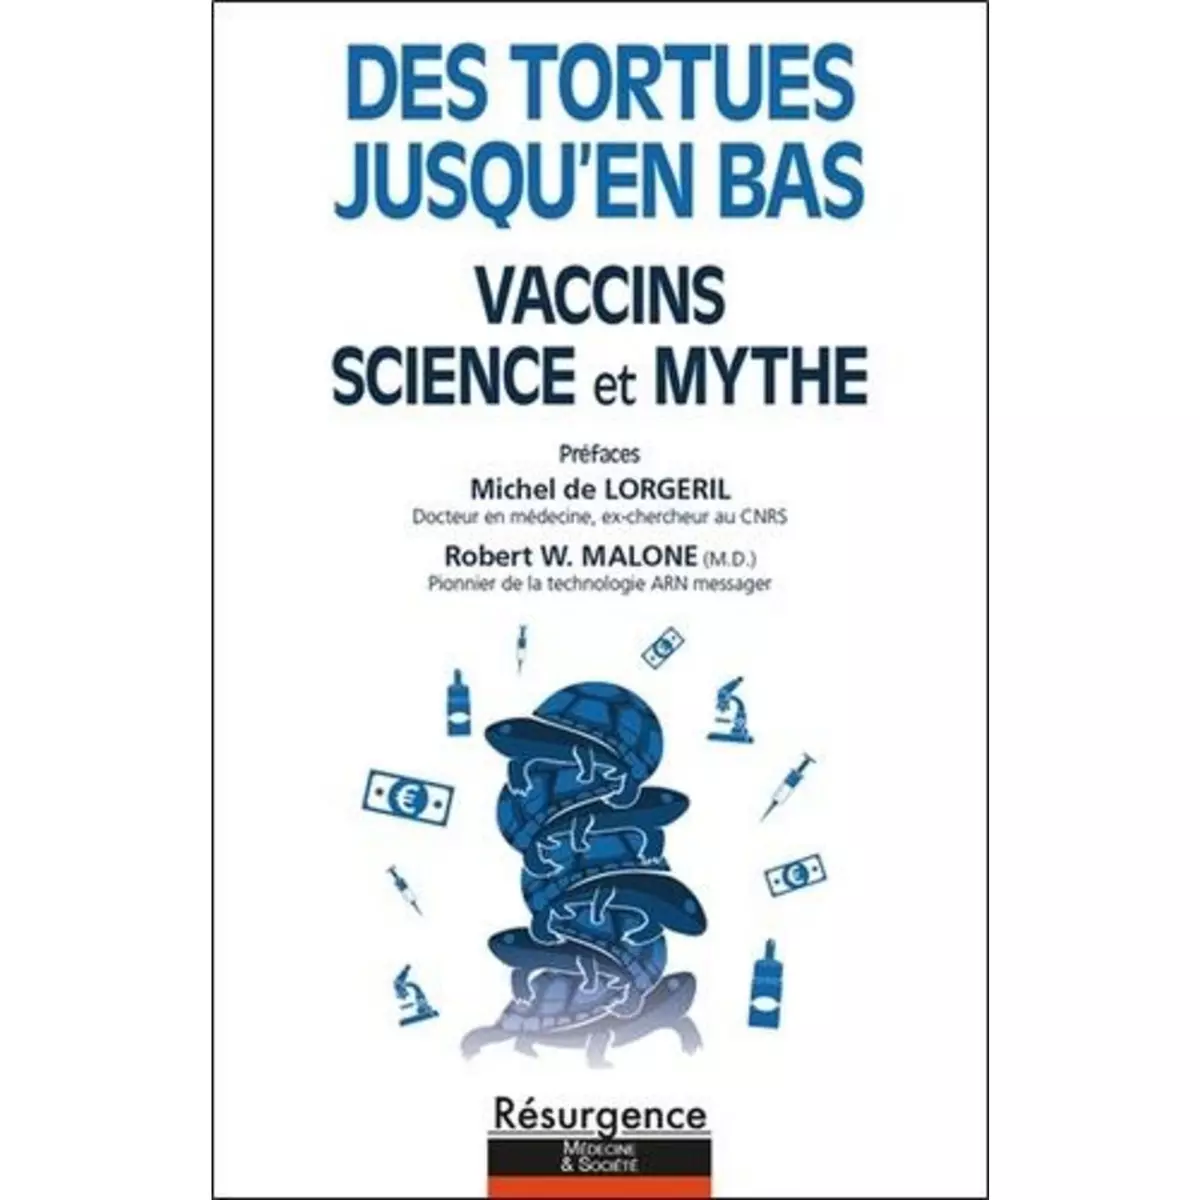  DES TORTUES JUSQU'EN BAS. VACCINS, SCIENCE ET MYTHE, The Turtles Team